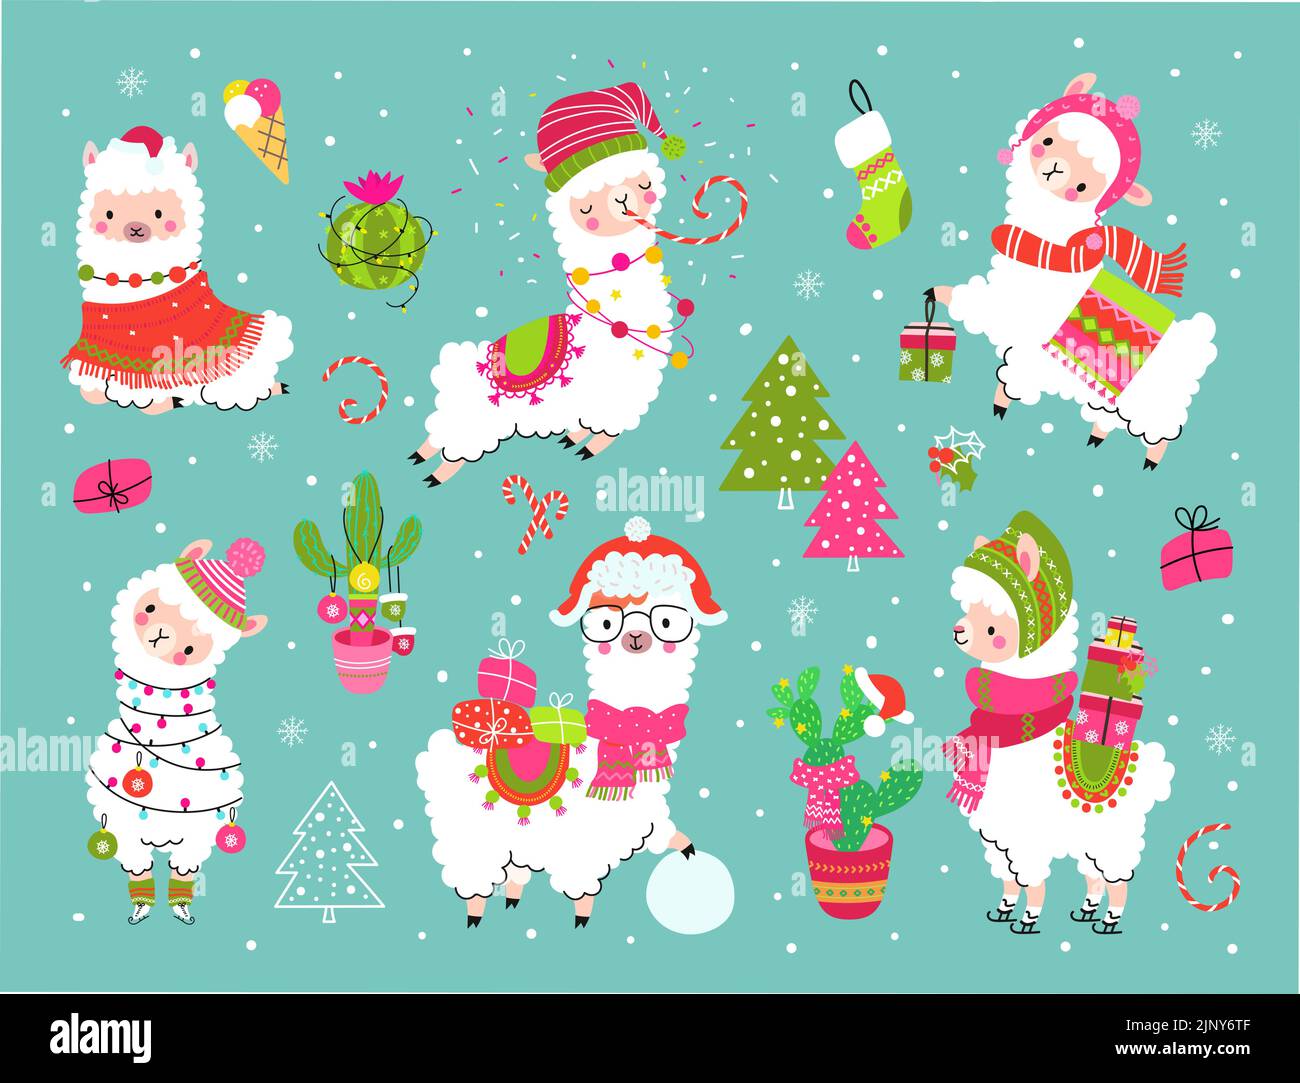 Alpaca de dibujos animados navideños con cactus y regalos. Divertidas llamas fiesta de Navidad, pegatinas de alpacas de vacaciones de año nuevo. Caracteres animales de invierno vector nowaday Ilustración del Vector